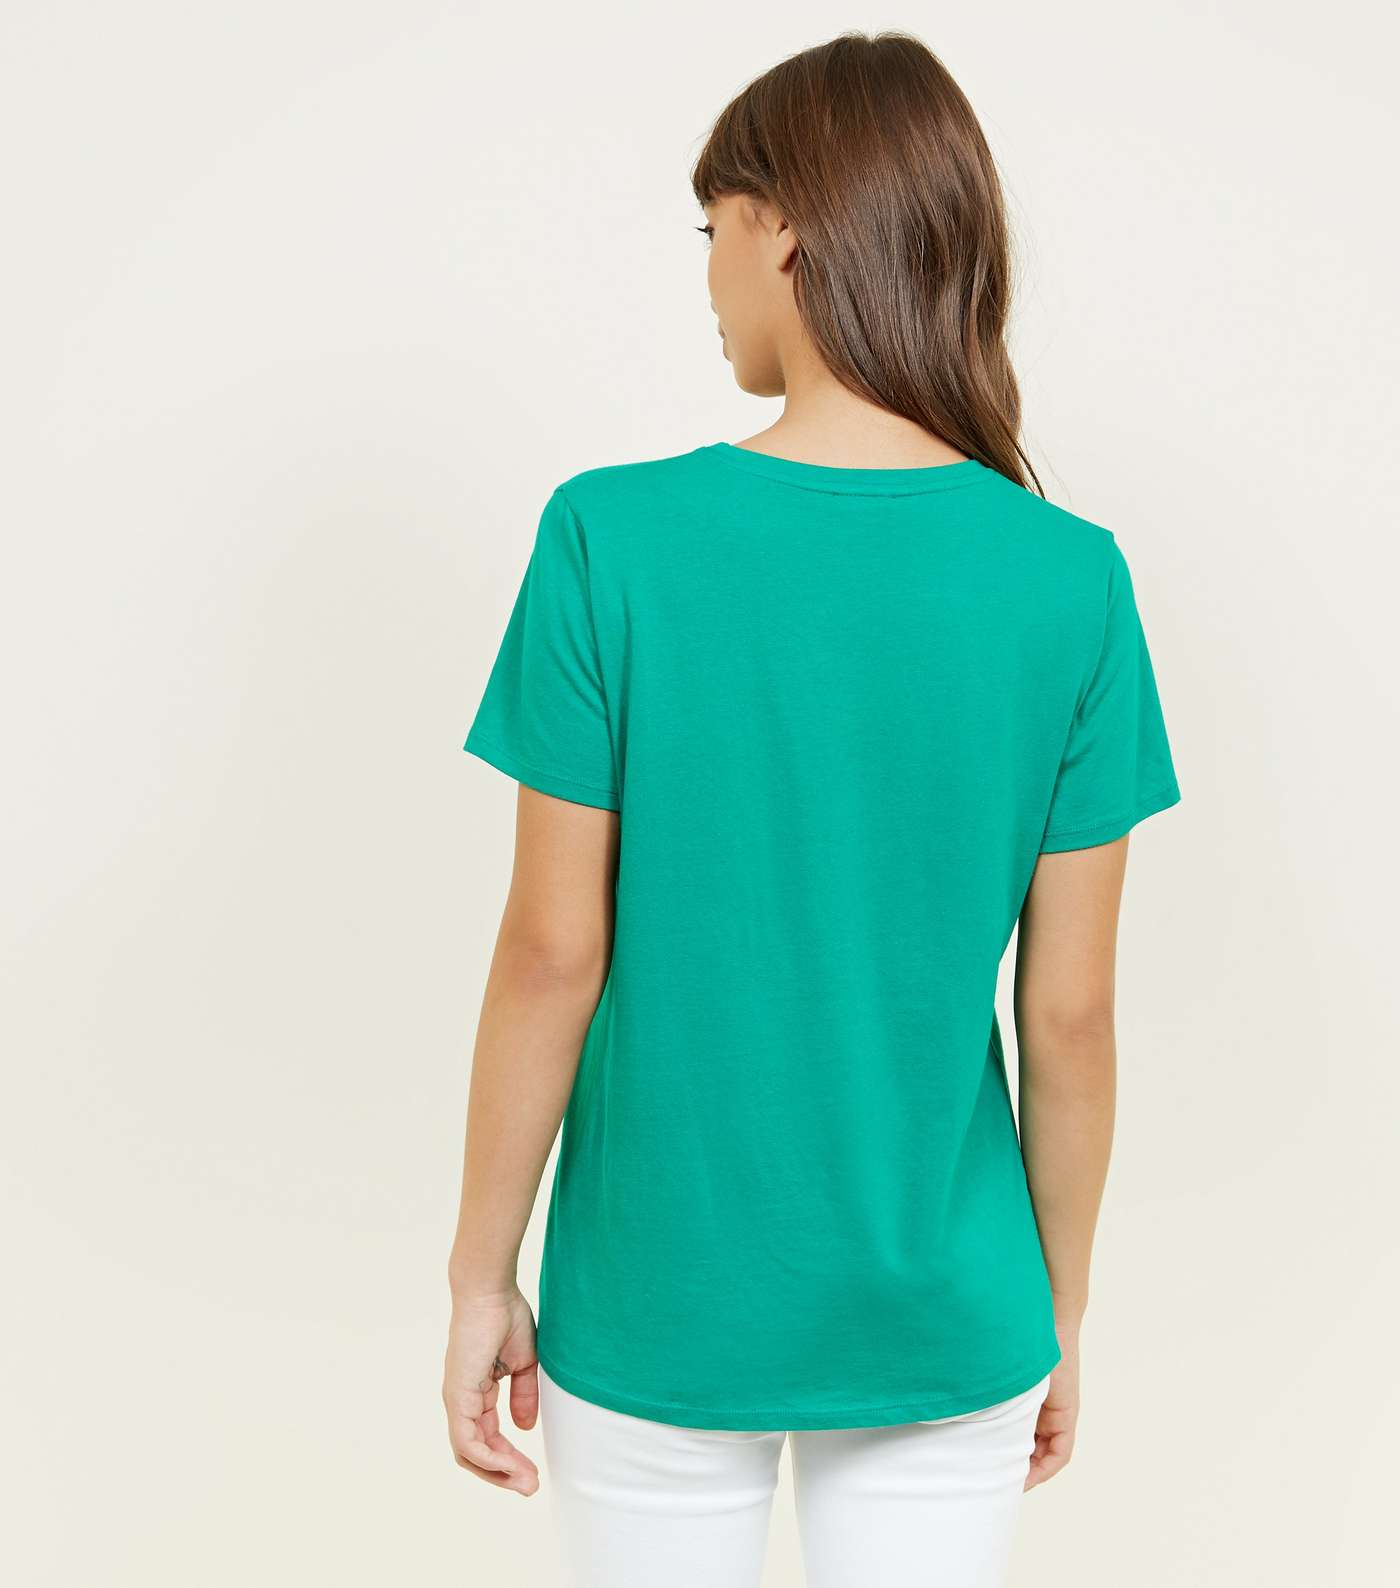 Green Parlez-Vous Français? Slogan T-Shirt Image 3